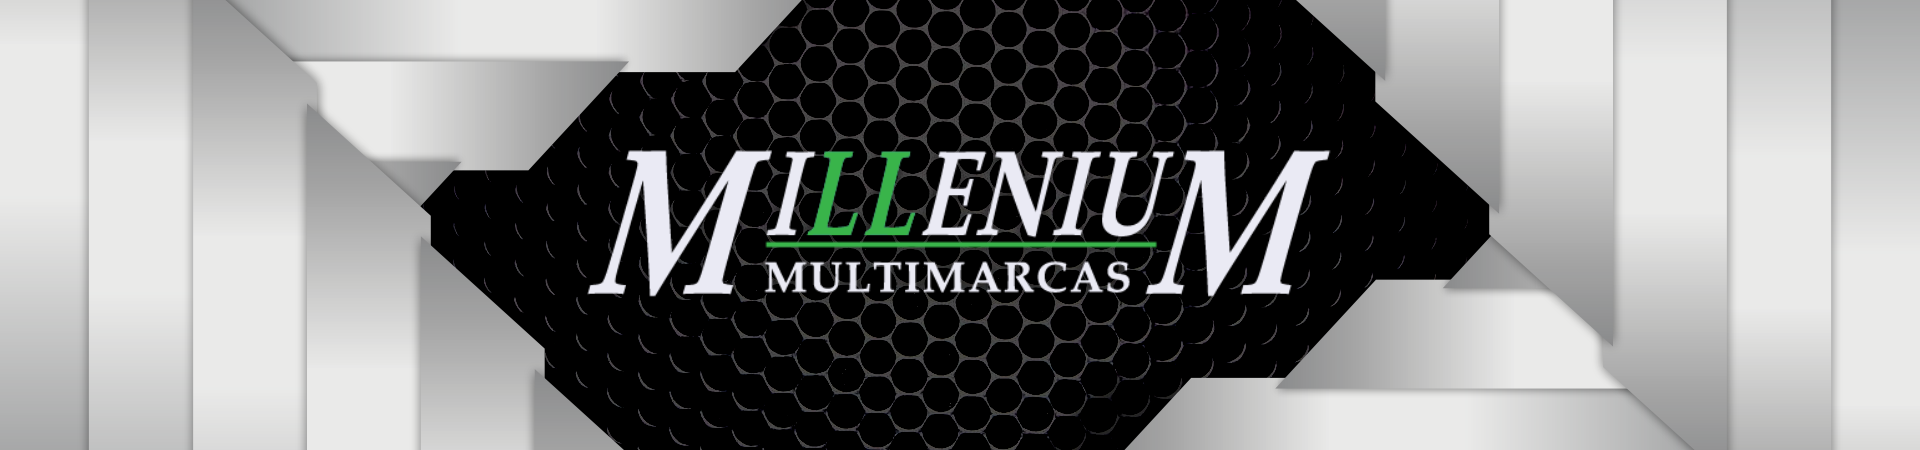 Millenium Multimarcas Caxias